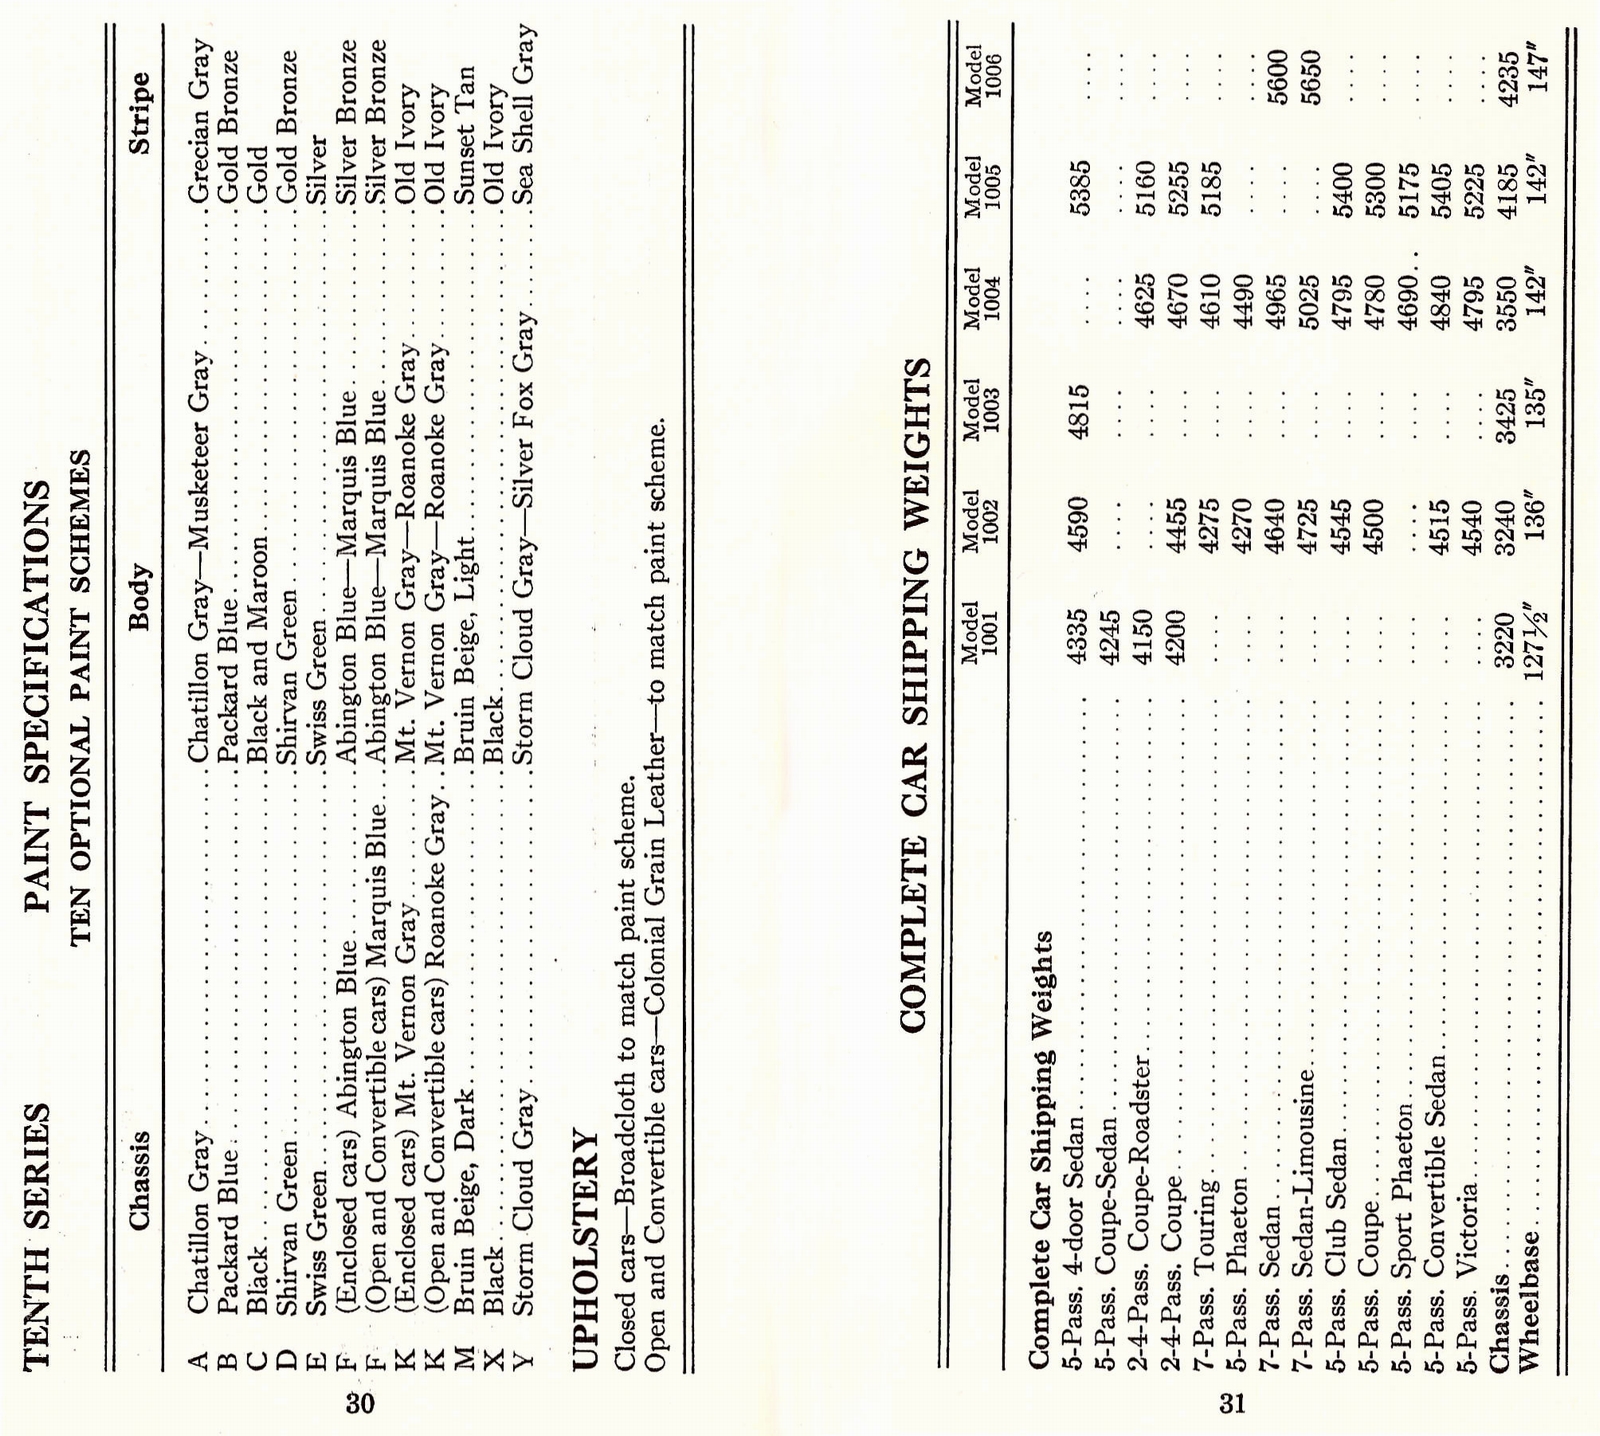 n_1933 Packard Facts Booklet-30-31.jpg